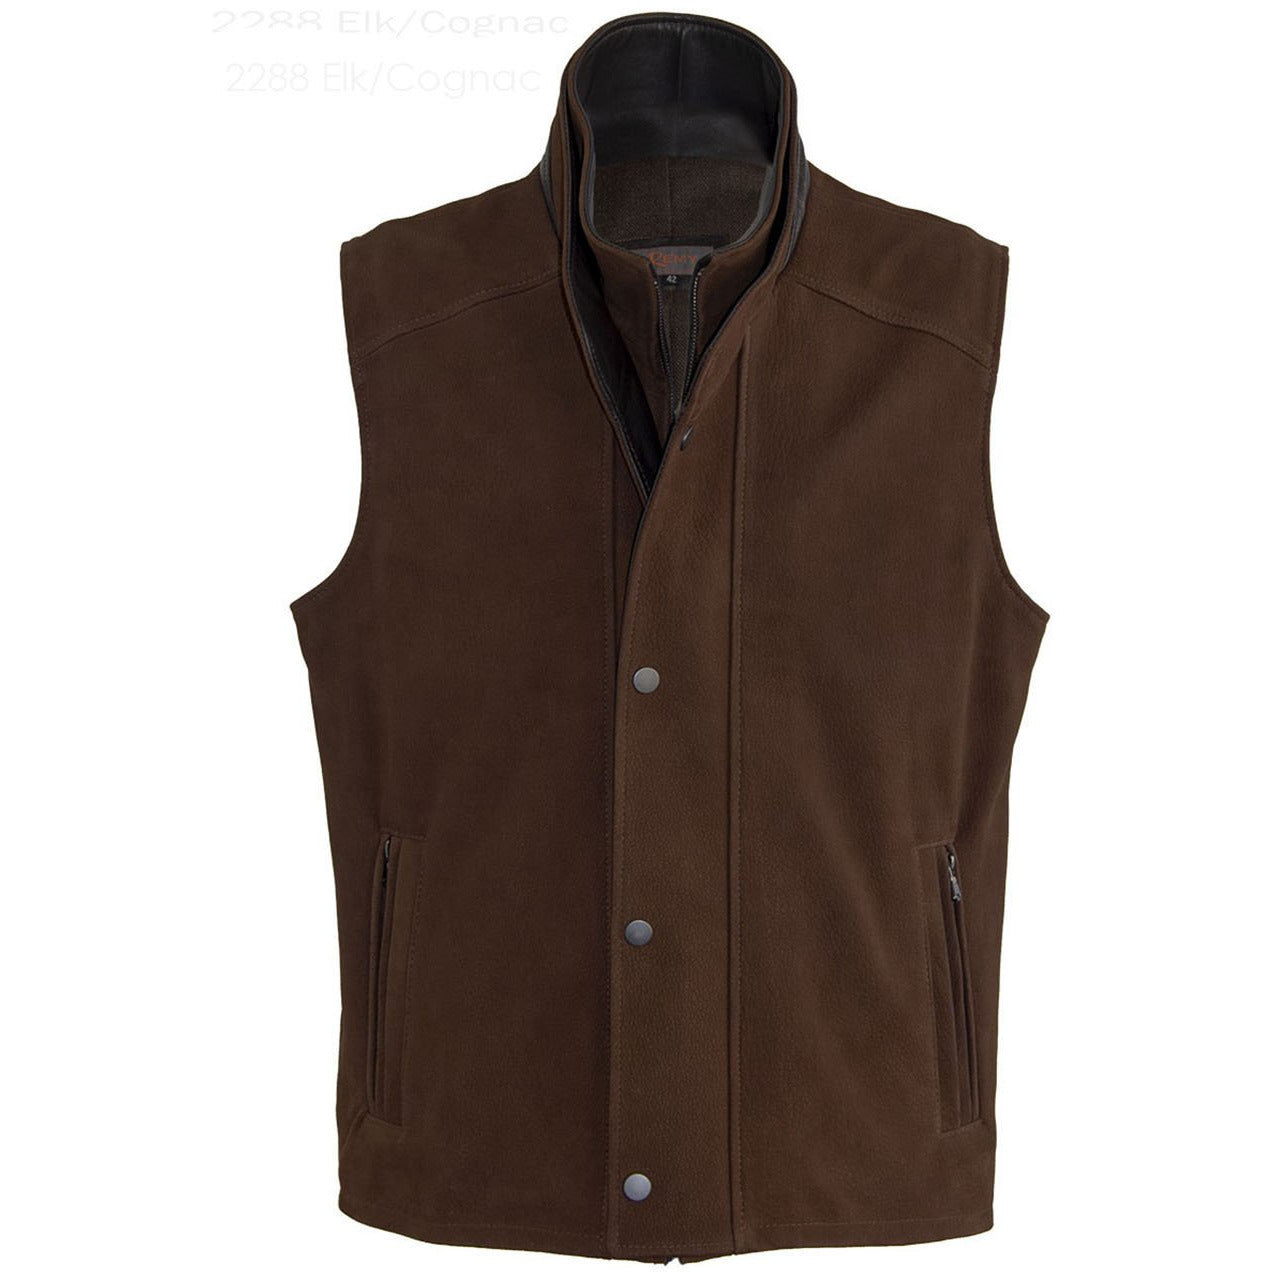 2288 - Mens Leather Double Collar Vest in Elk/Cognac